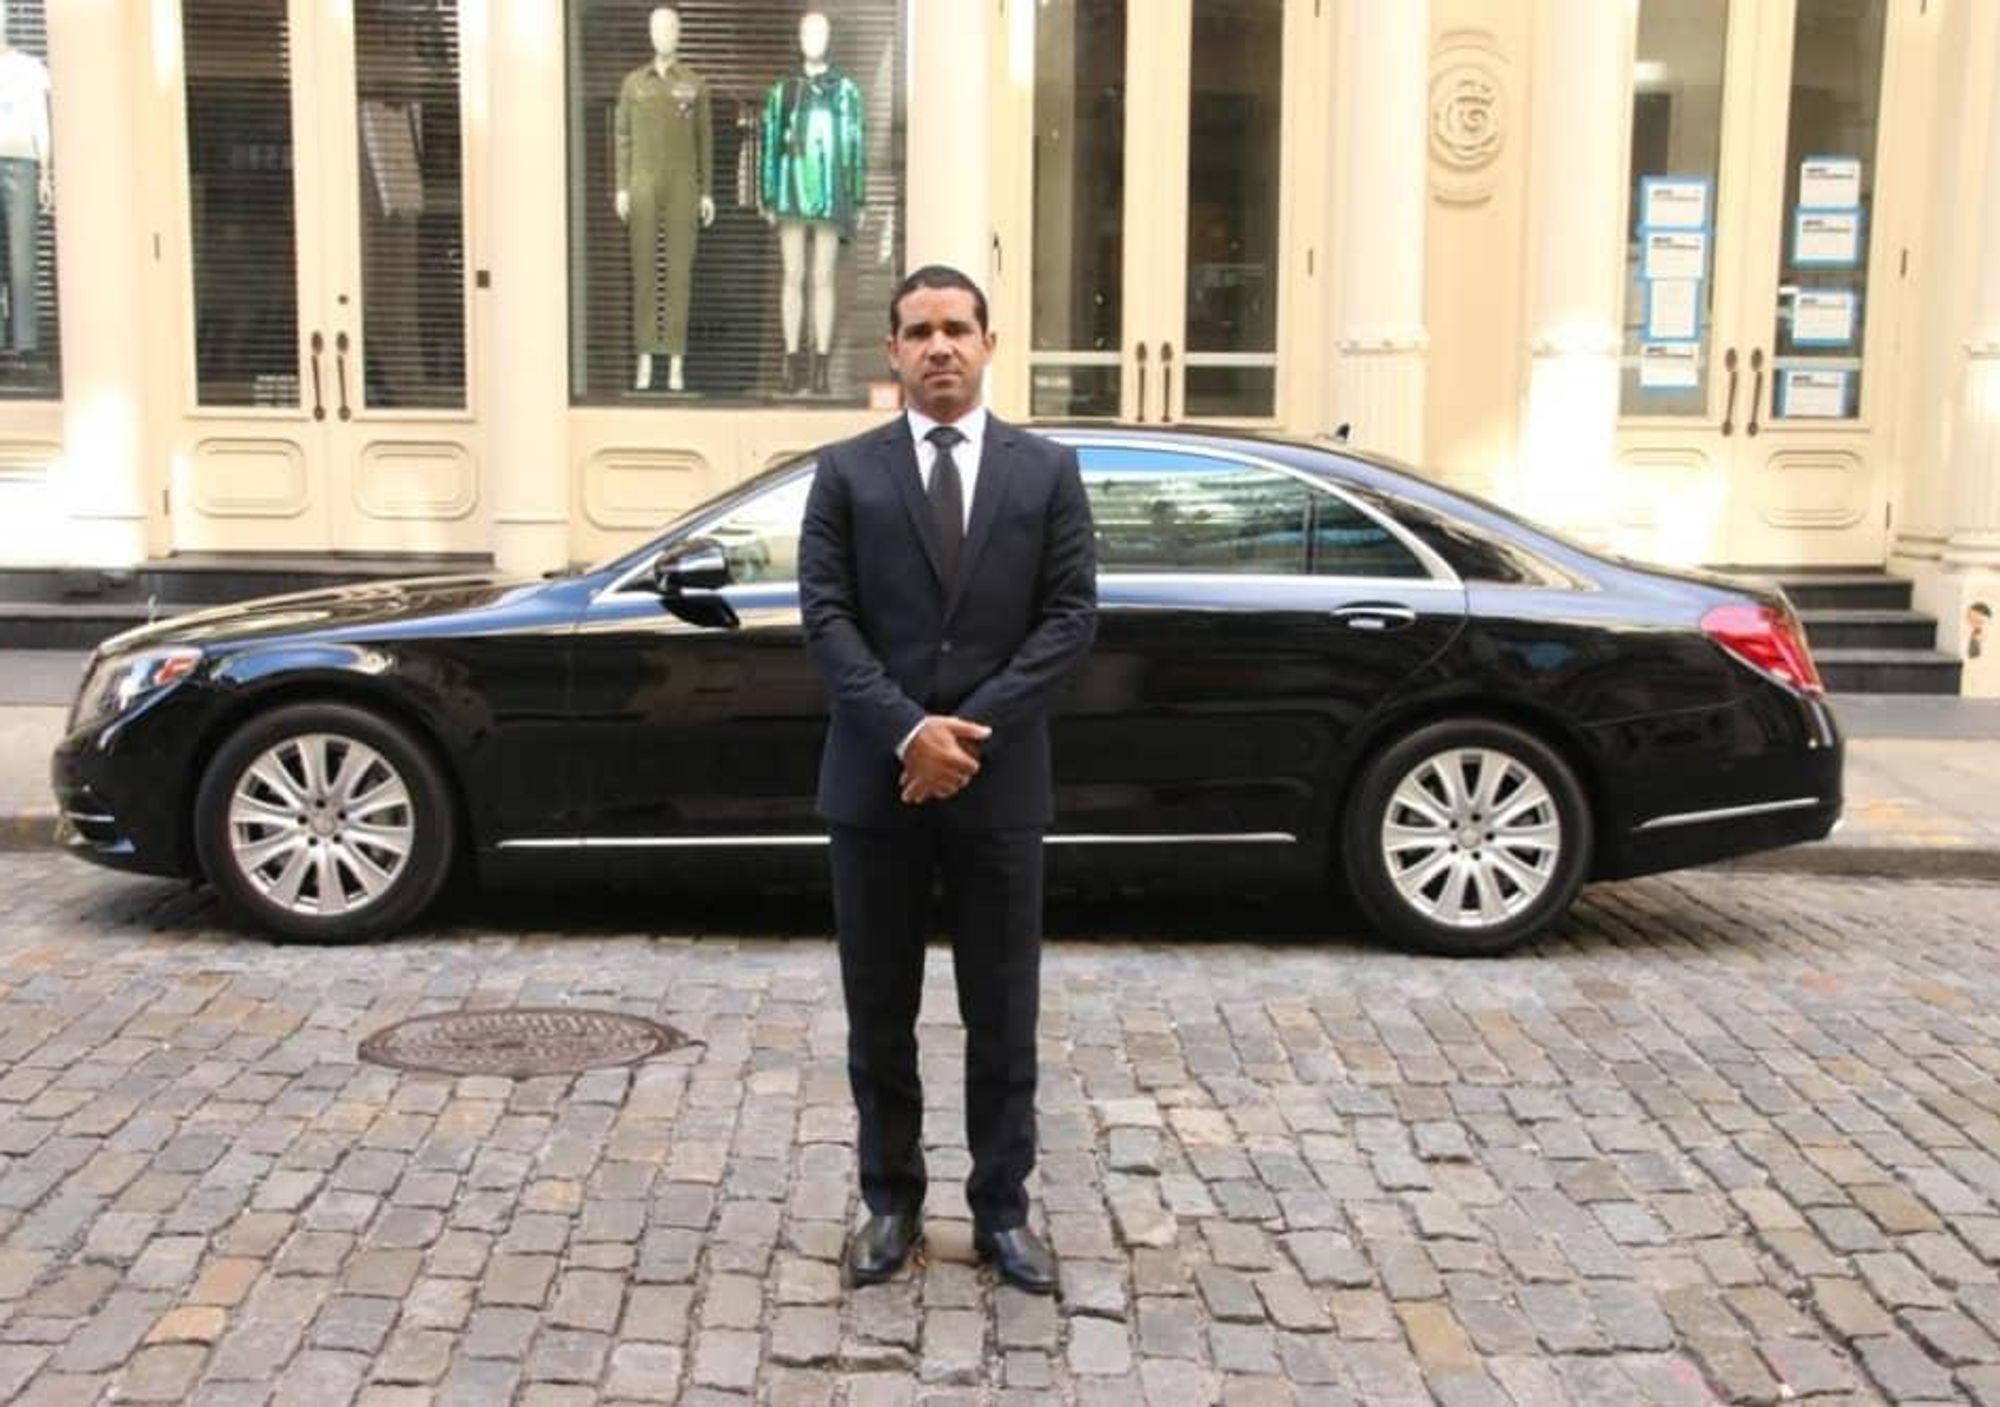 drvn car service limousine luxury rides